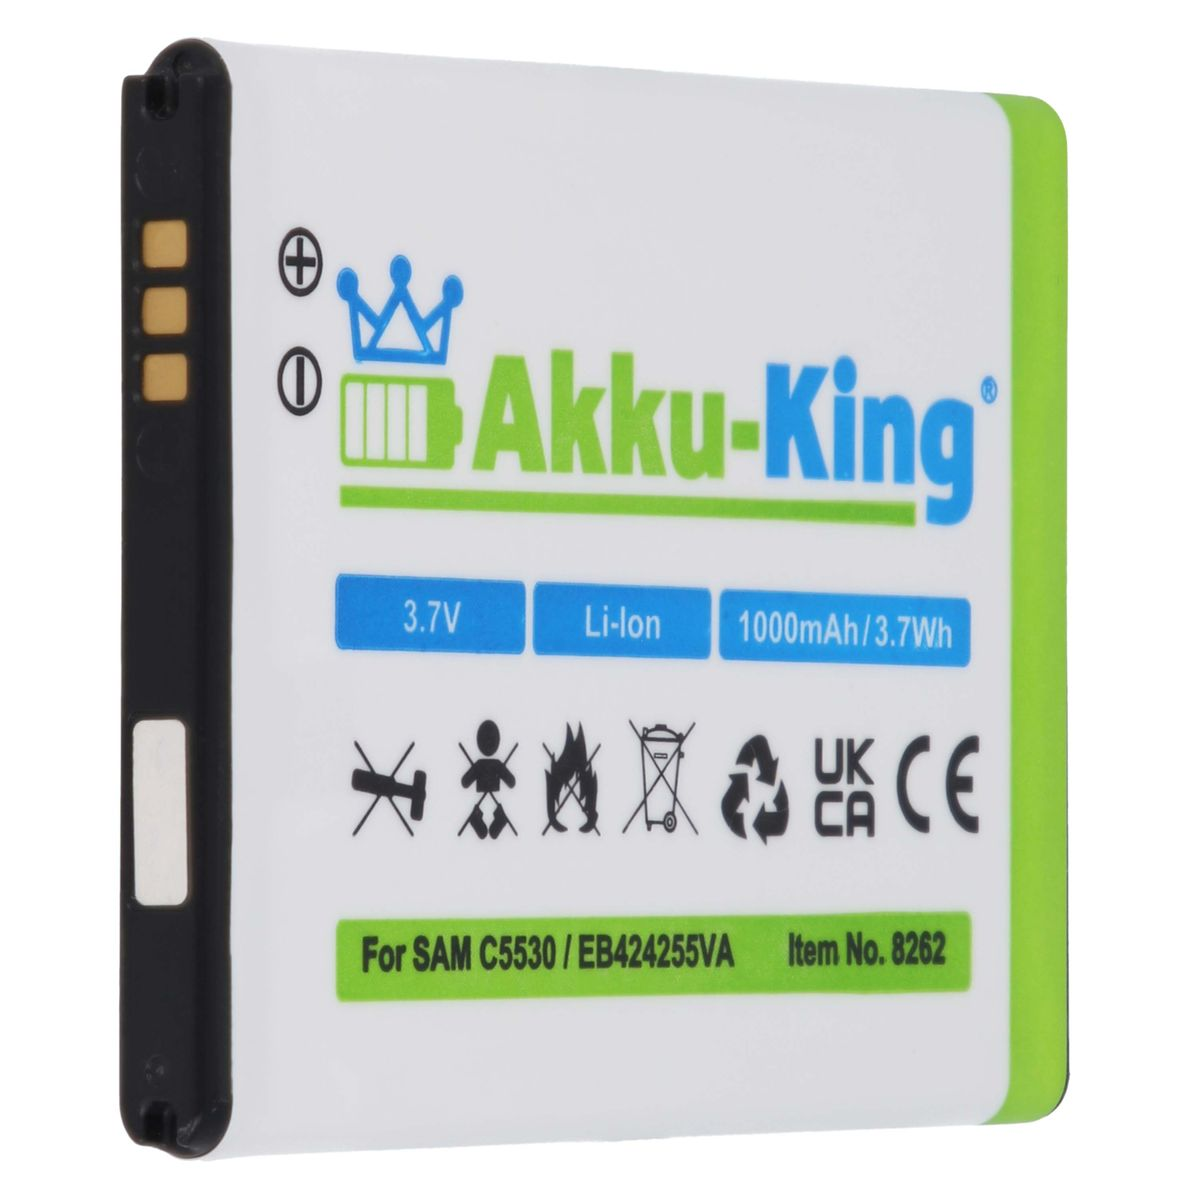 1000mAh mit Akku AKKU-KING Samsung Handy-Akku, kompatibel EB424255VA Volt, 3.7 Li-Ion